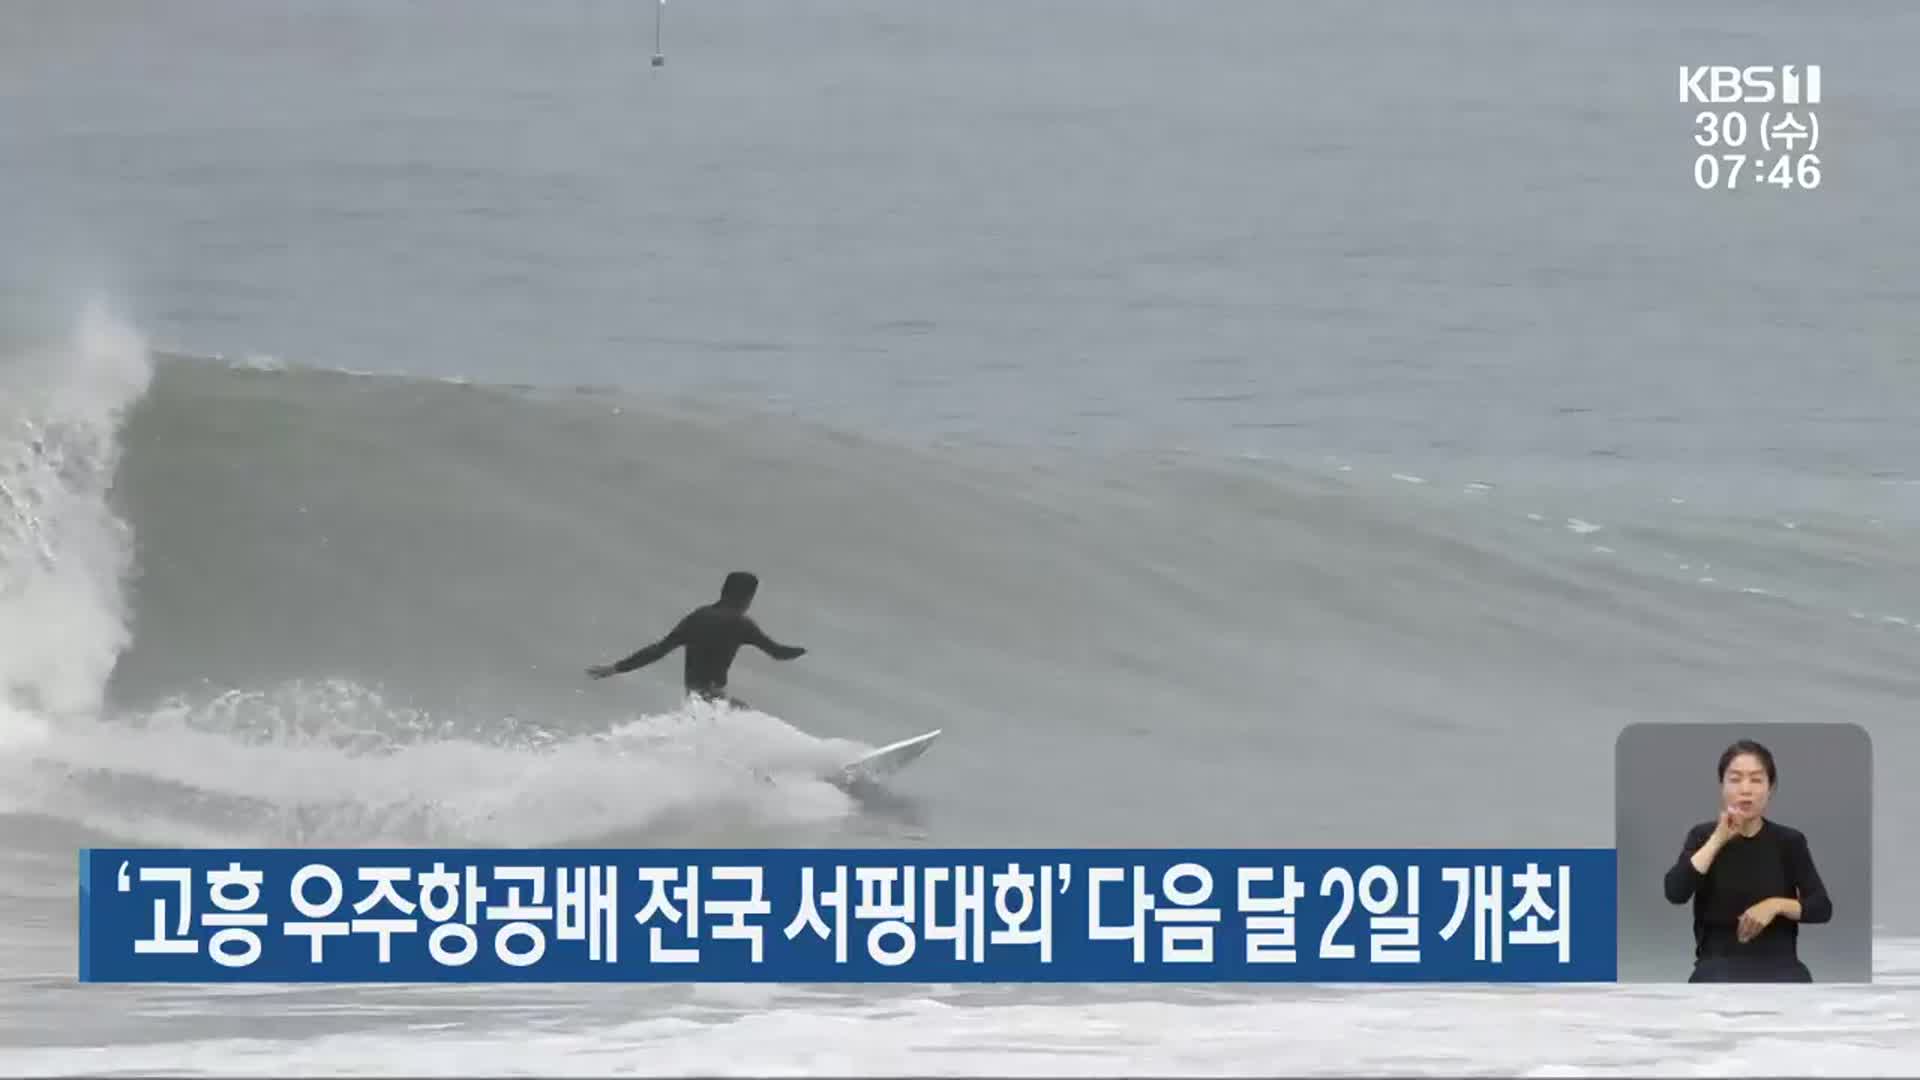 ‘고흥 우주항공배 전국 서핑대회’ 다음 달 2일 개최